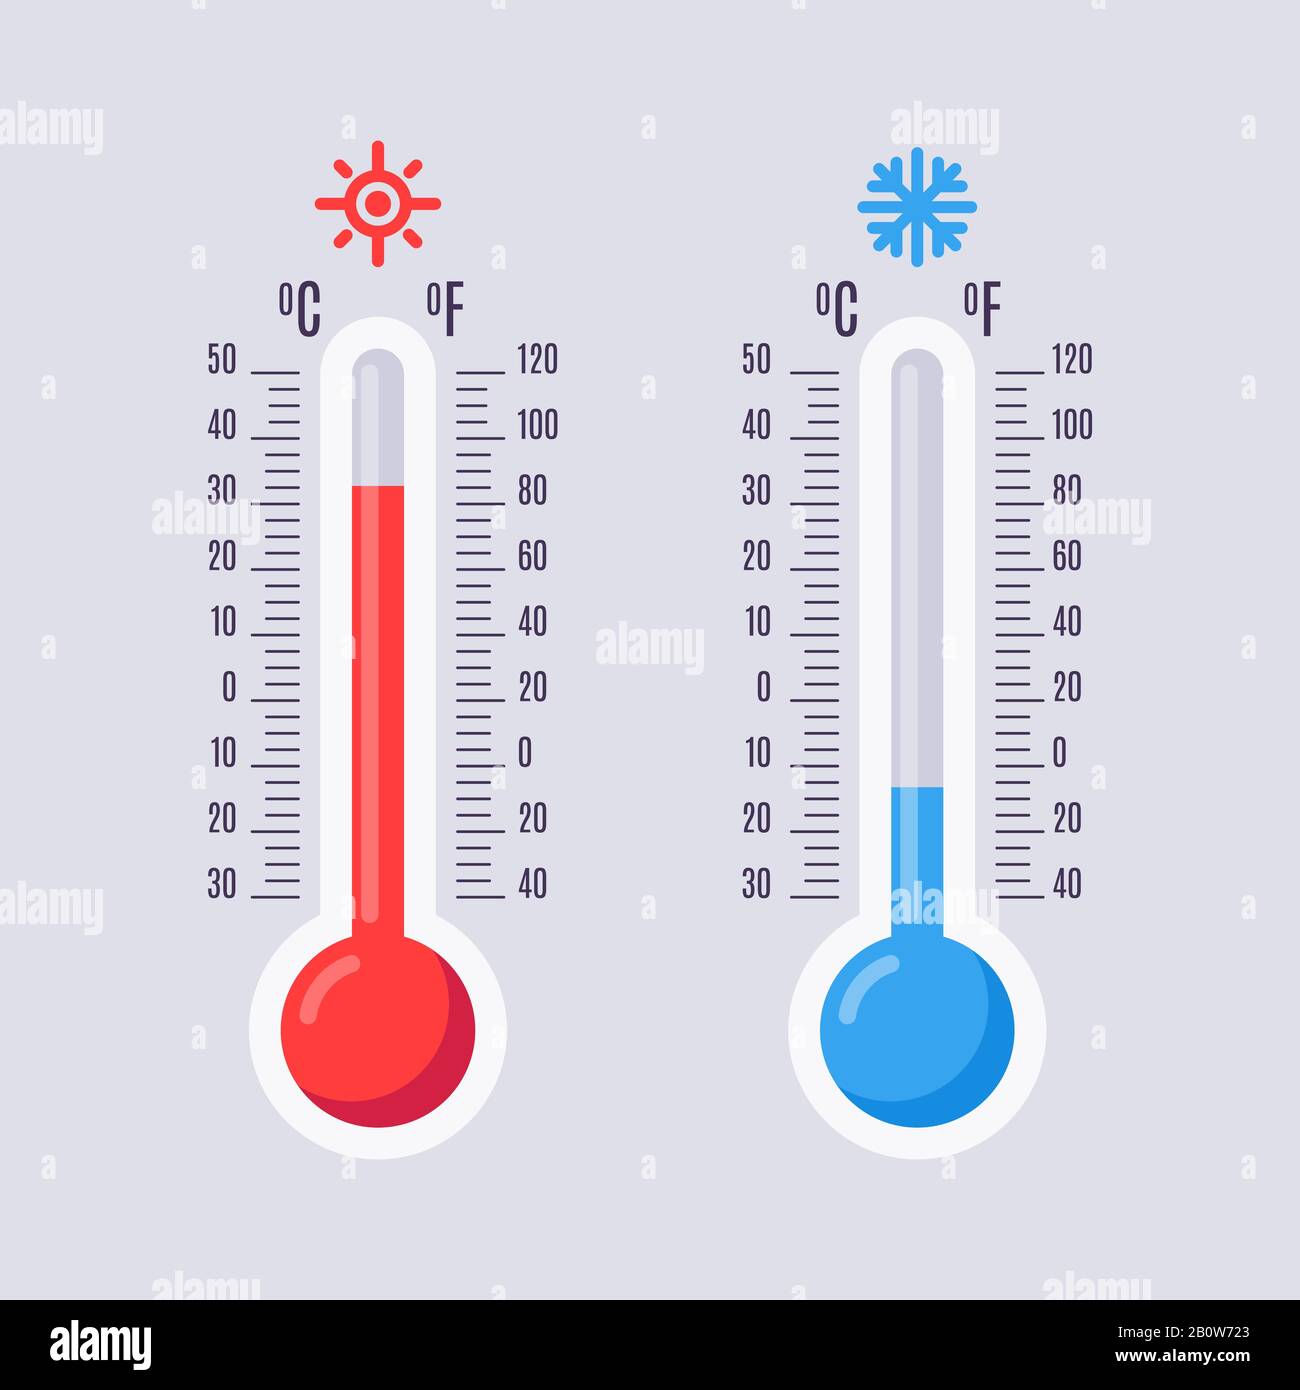 Flache Thermometer. Heißes und kaltes Quecksilberthermometer mit fahrenheit- und celsius-Skalen. Symbole für warme und kühle Temperaturwerte Stock Vektor